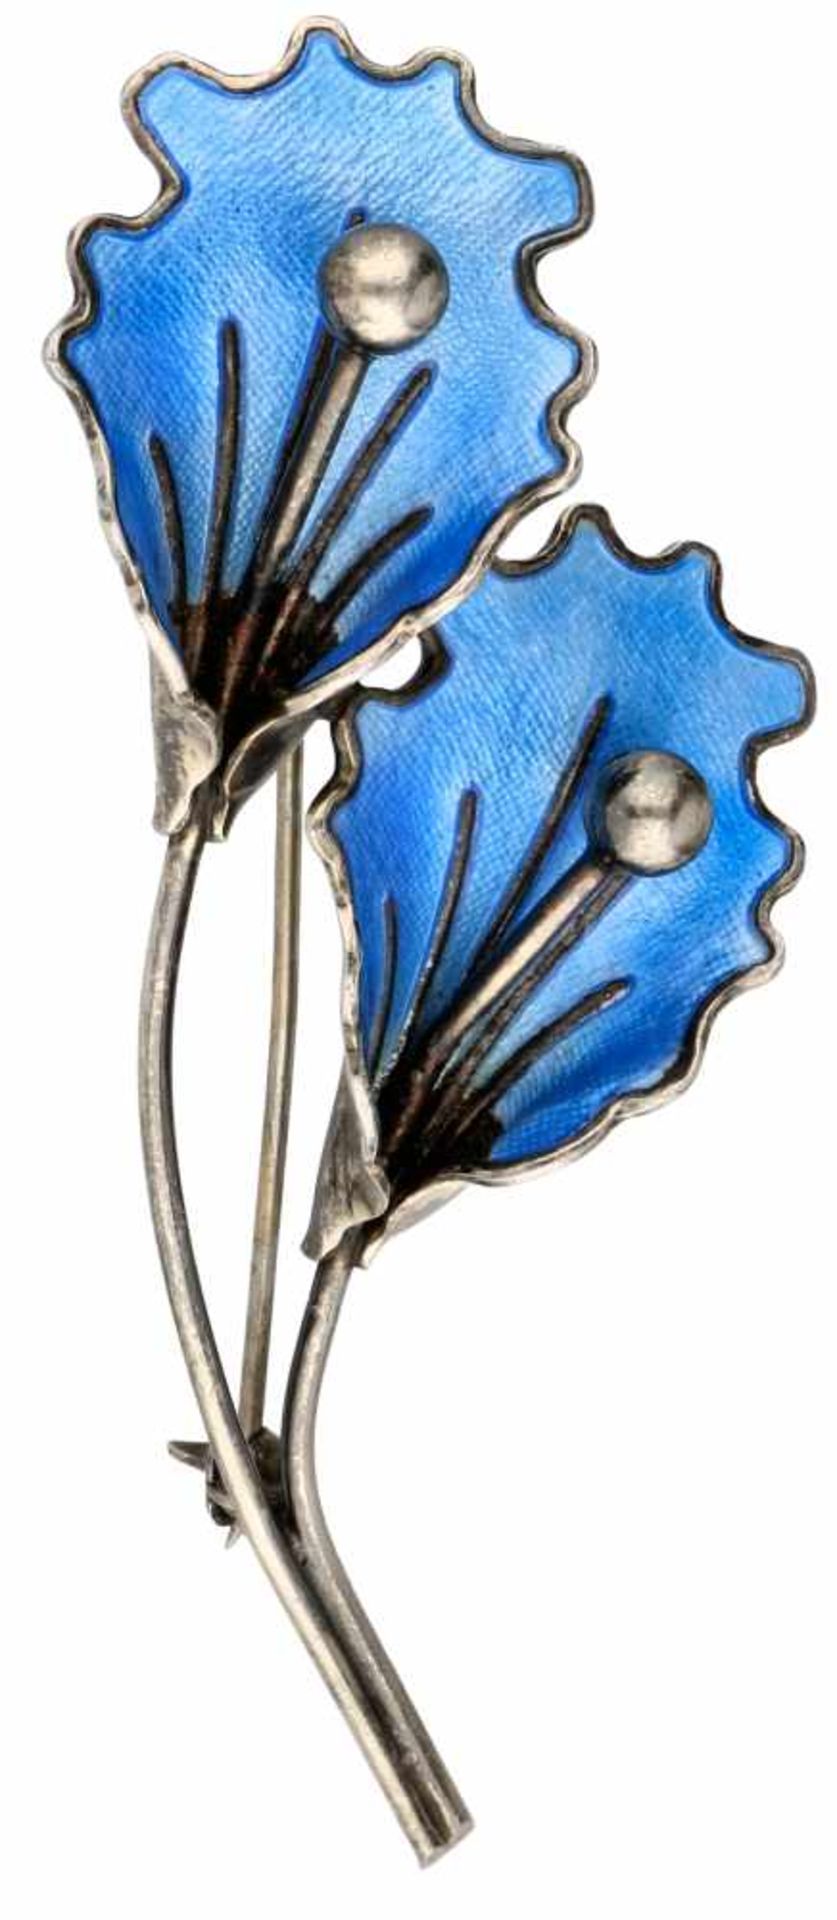 Zilveren Aksel Holmsen broche, blauwe emaille - 925/1000.Noorwegen, Sandefjord. LxB: 8,1 x 3,2 cm.